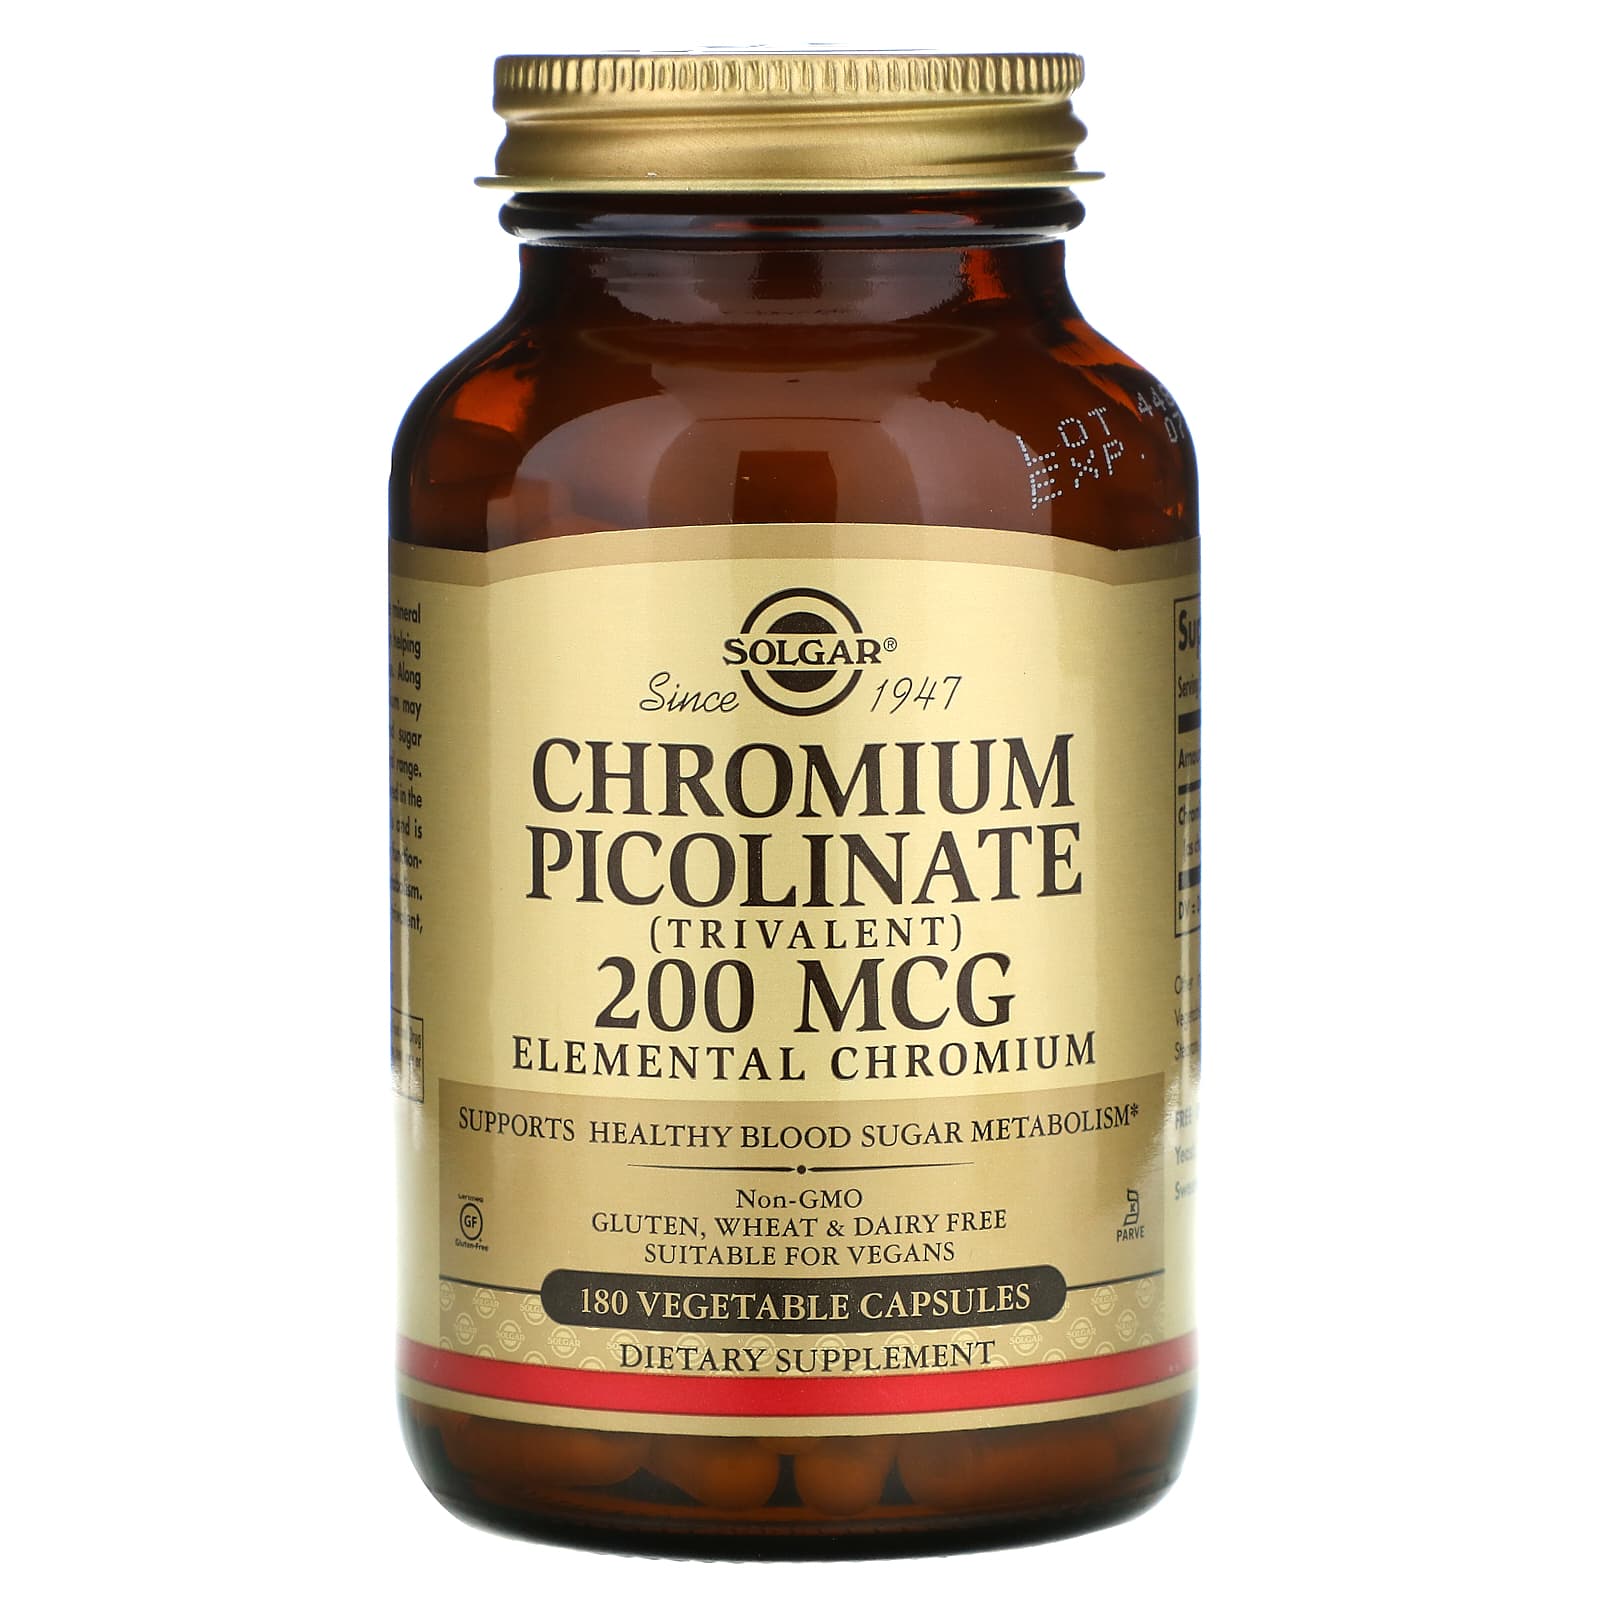 Solgar Chromium Picolinate 200 Mcg, 180 Vegetable Capsules